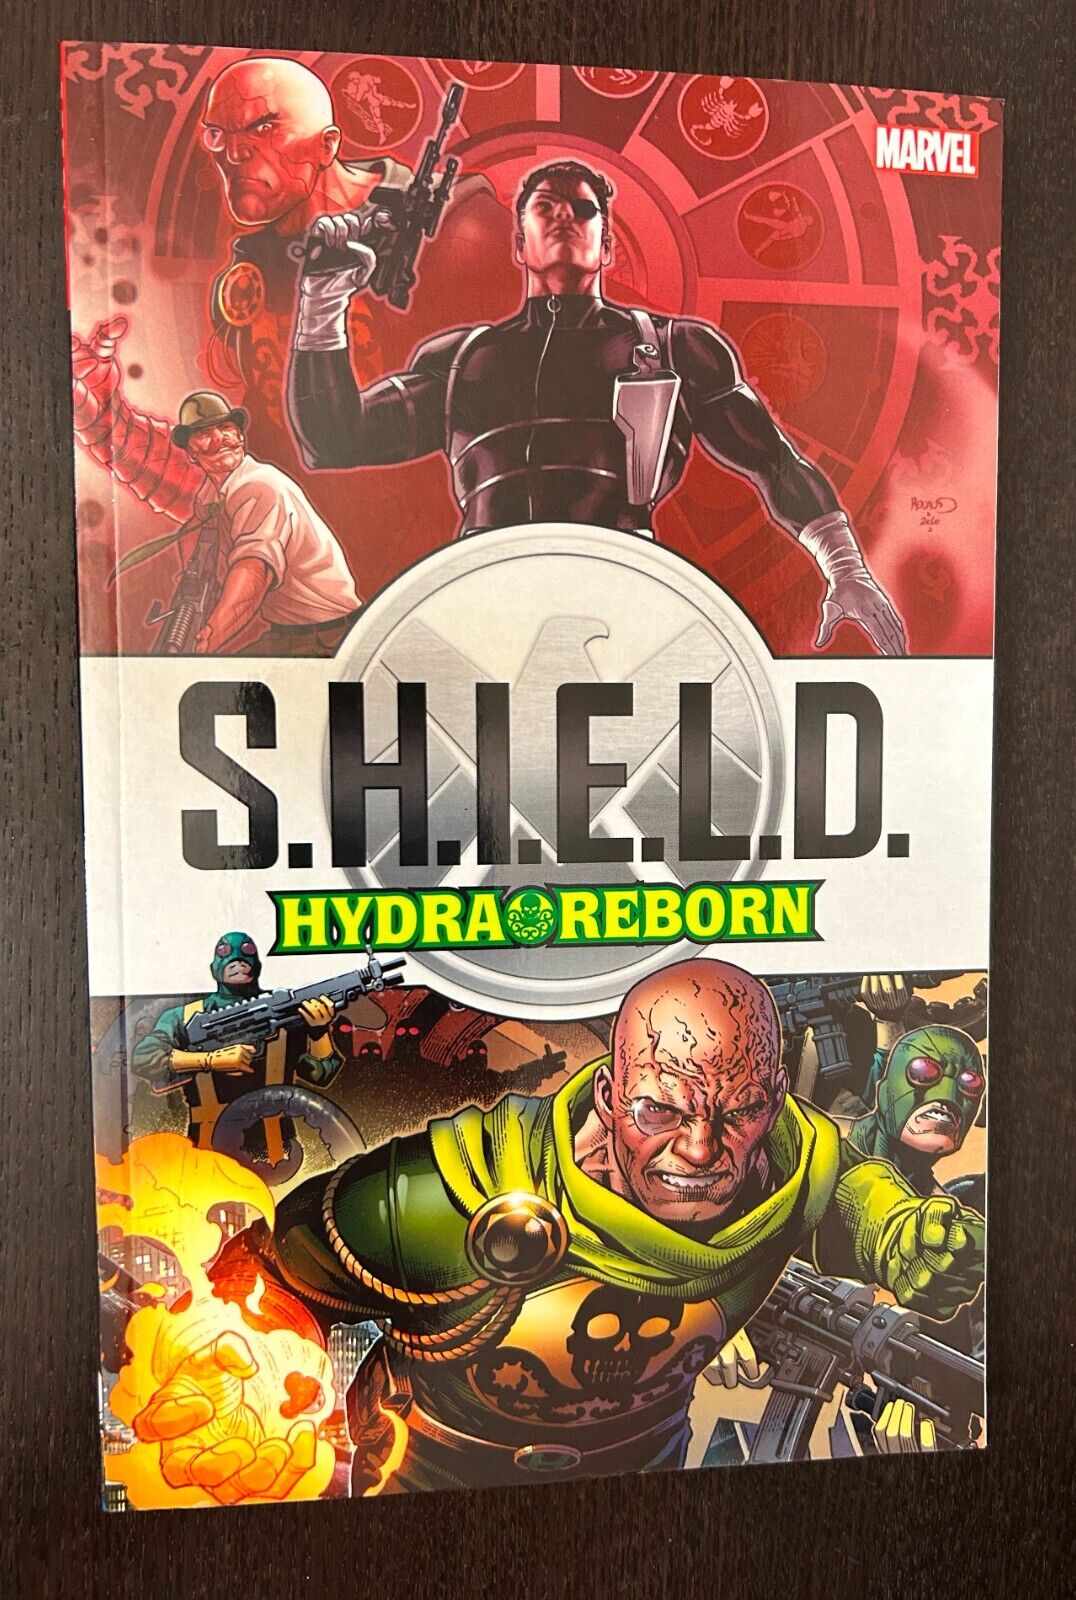 SHIELD HYDRA REBORN TPB (Marvel Comics 2017)